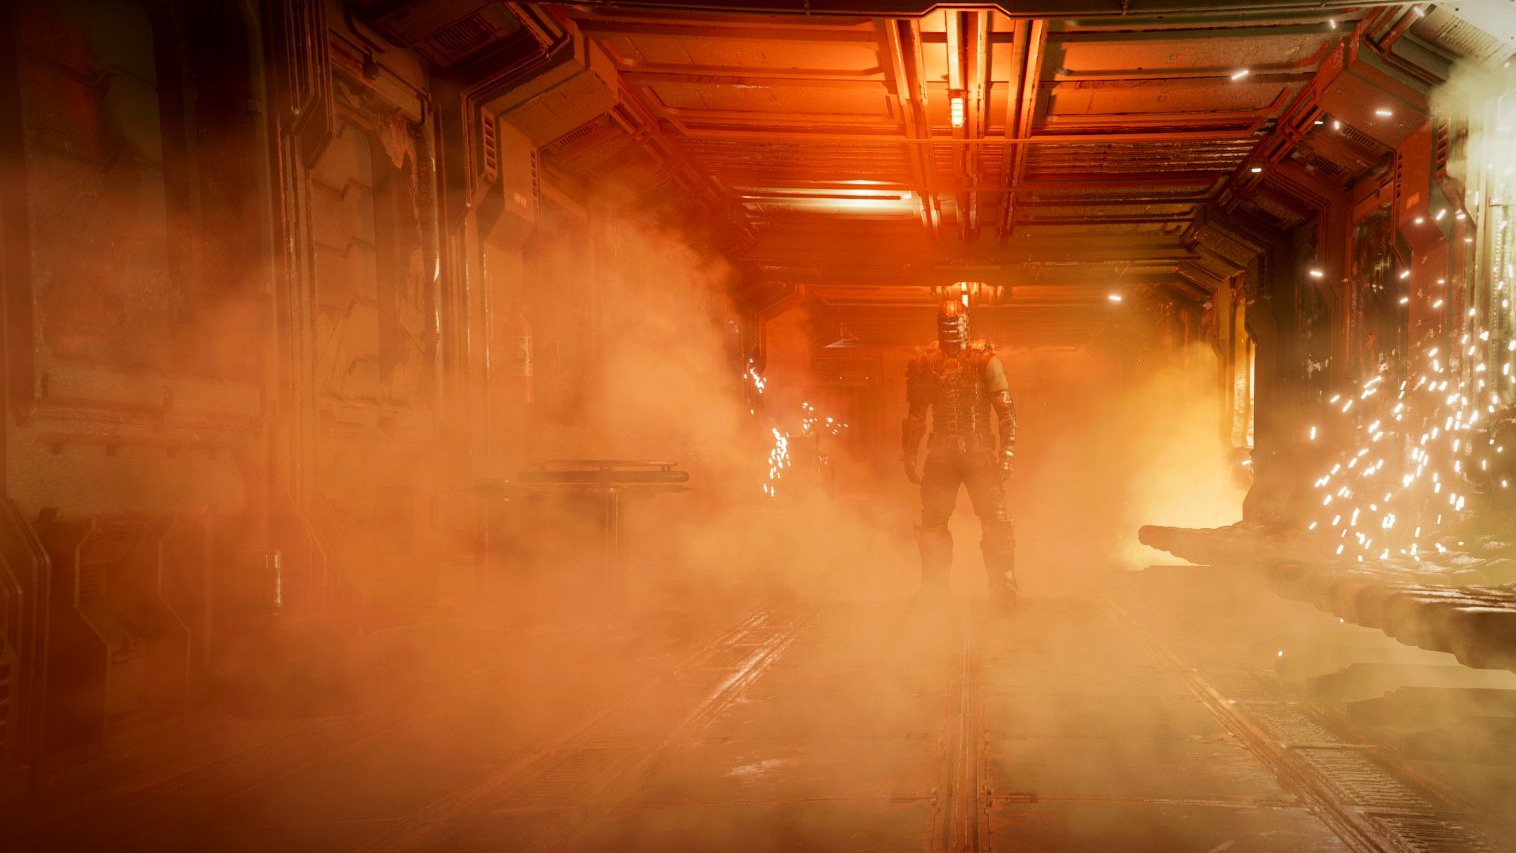 Dead Space 리메이크 리뷰 - Isaac Clarke는 오렌지빛-빨간빛으로 밝힌 복도 끝에서 카메라를 향해 오른쪽으로 오프셋으로 서 있으며 오른쪽에서 불꽃이 튀고 있습니다